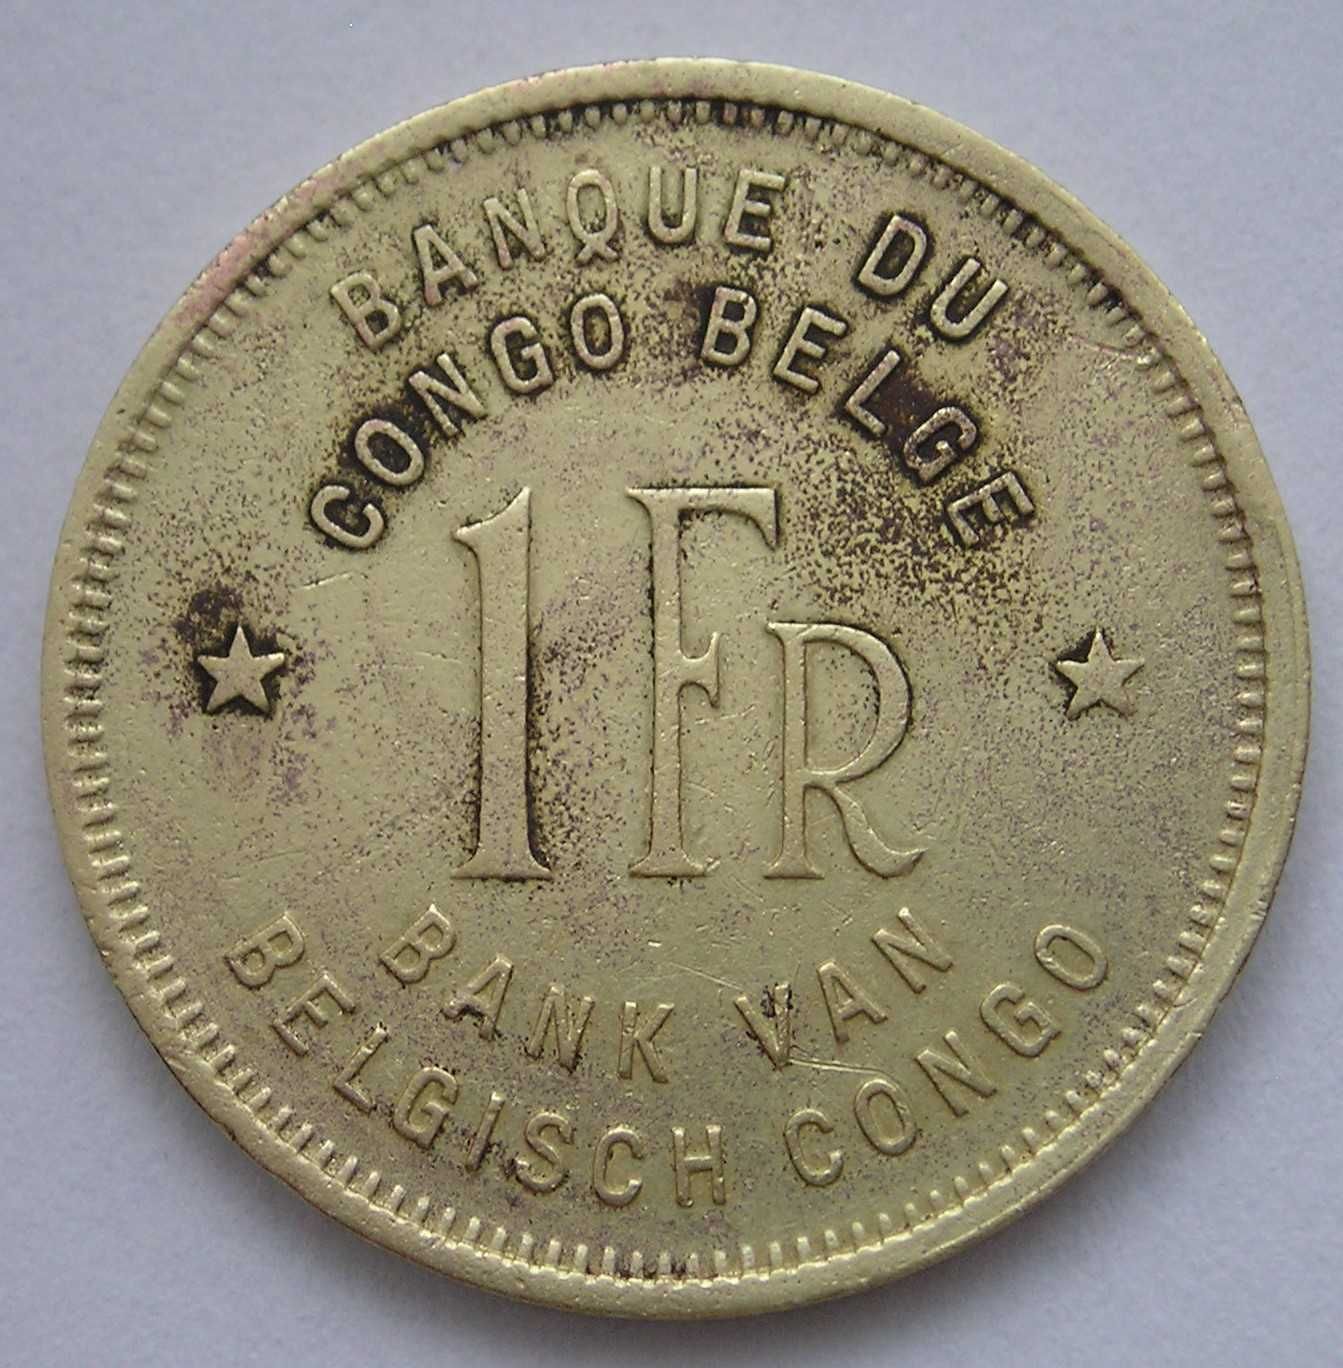 Kongo Belgijskie 1 frank 1949 - słoń